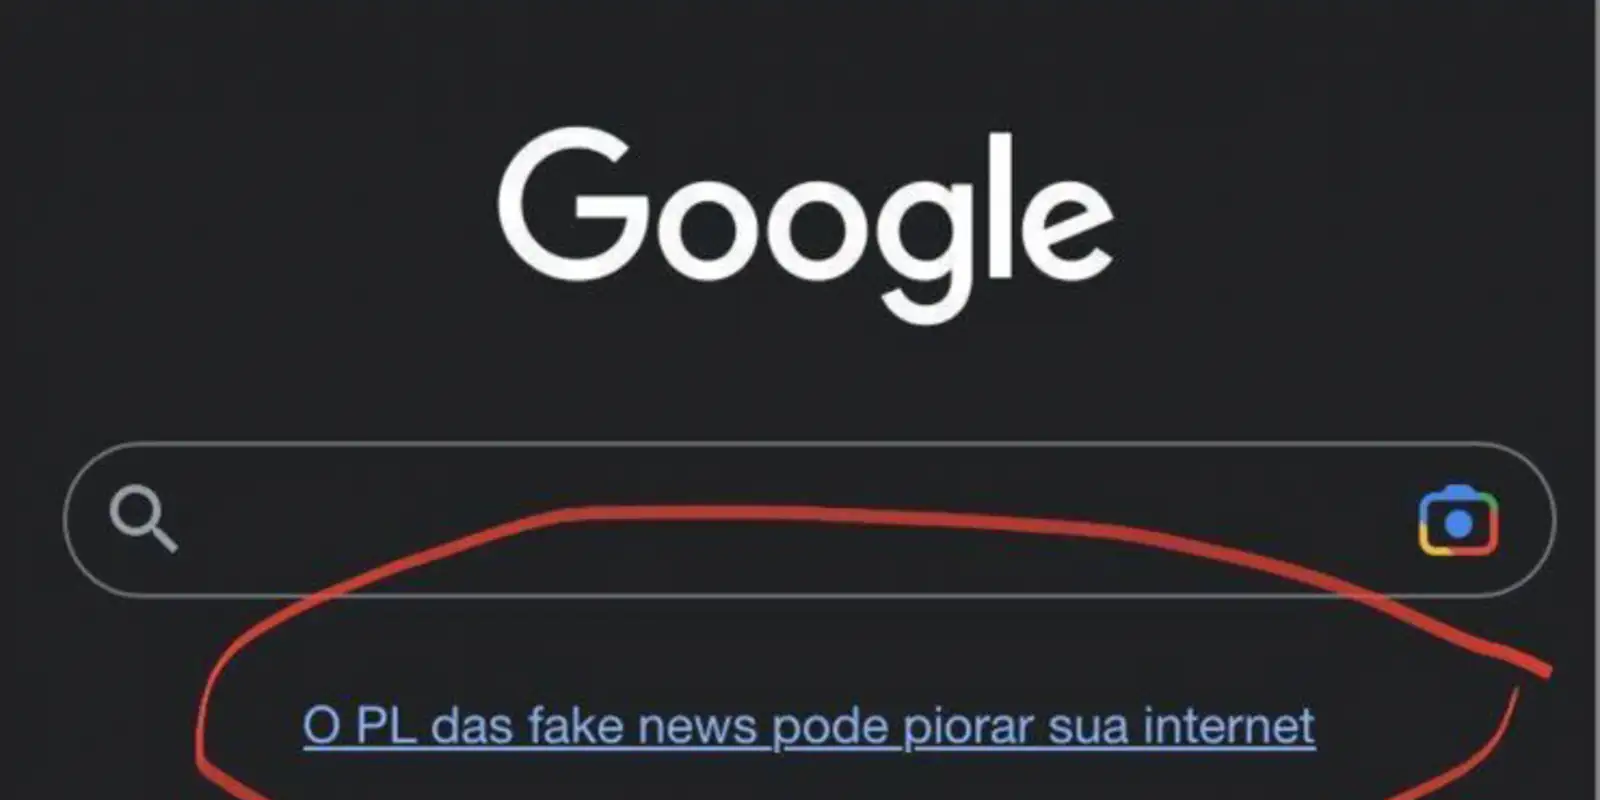 Big techs cometeram ‘abuso de poder e violações à ordem de consumo’ contra o PL das Fake News, diz PF